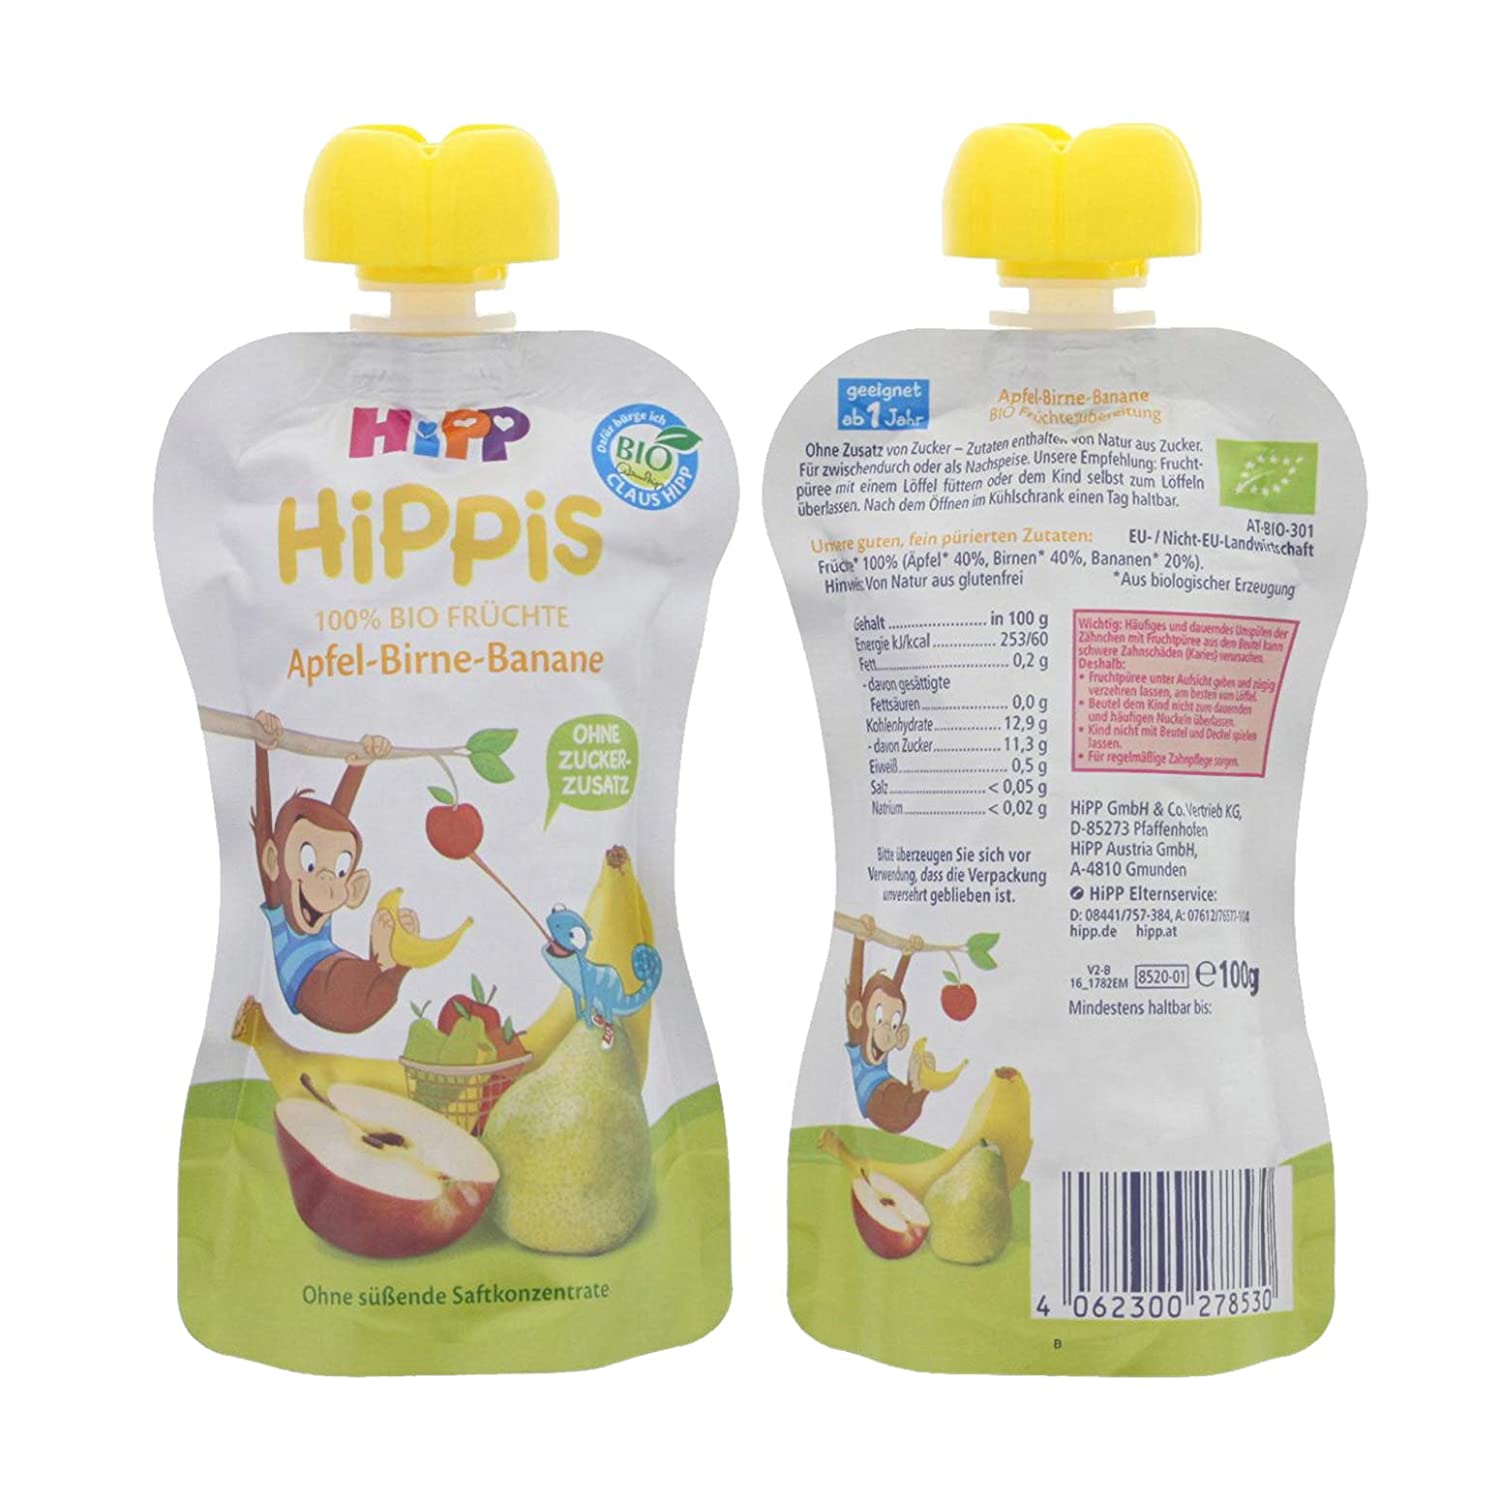 HiPP HiPPiS Quetschbeutel, Apfel-Birne-Banane, 100% Bio-Früchte ohne Zuckerzusatz, 6 x 100 g Beutel